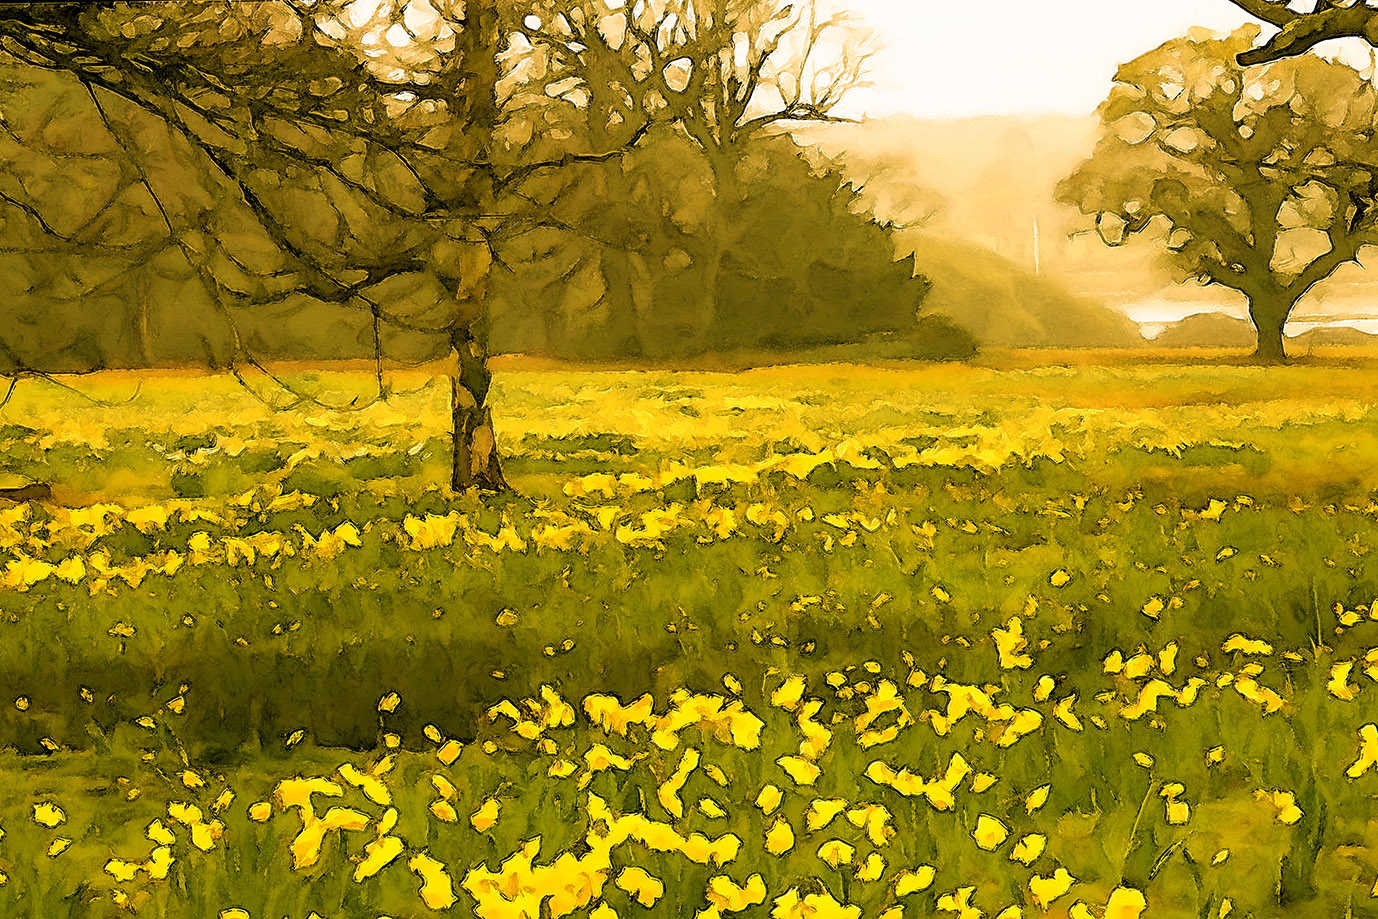 Daffodil Meadow, Exbury Gardens